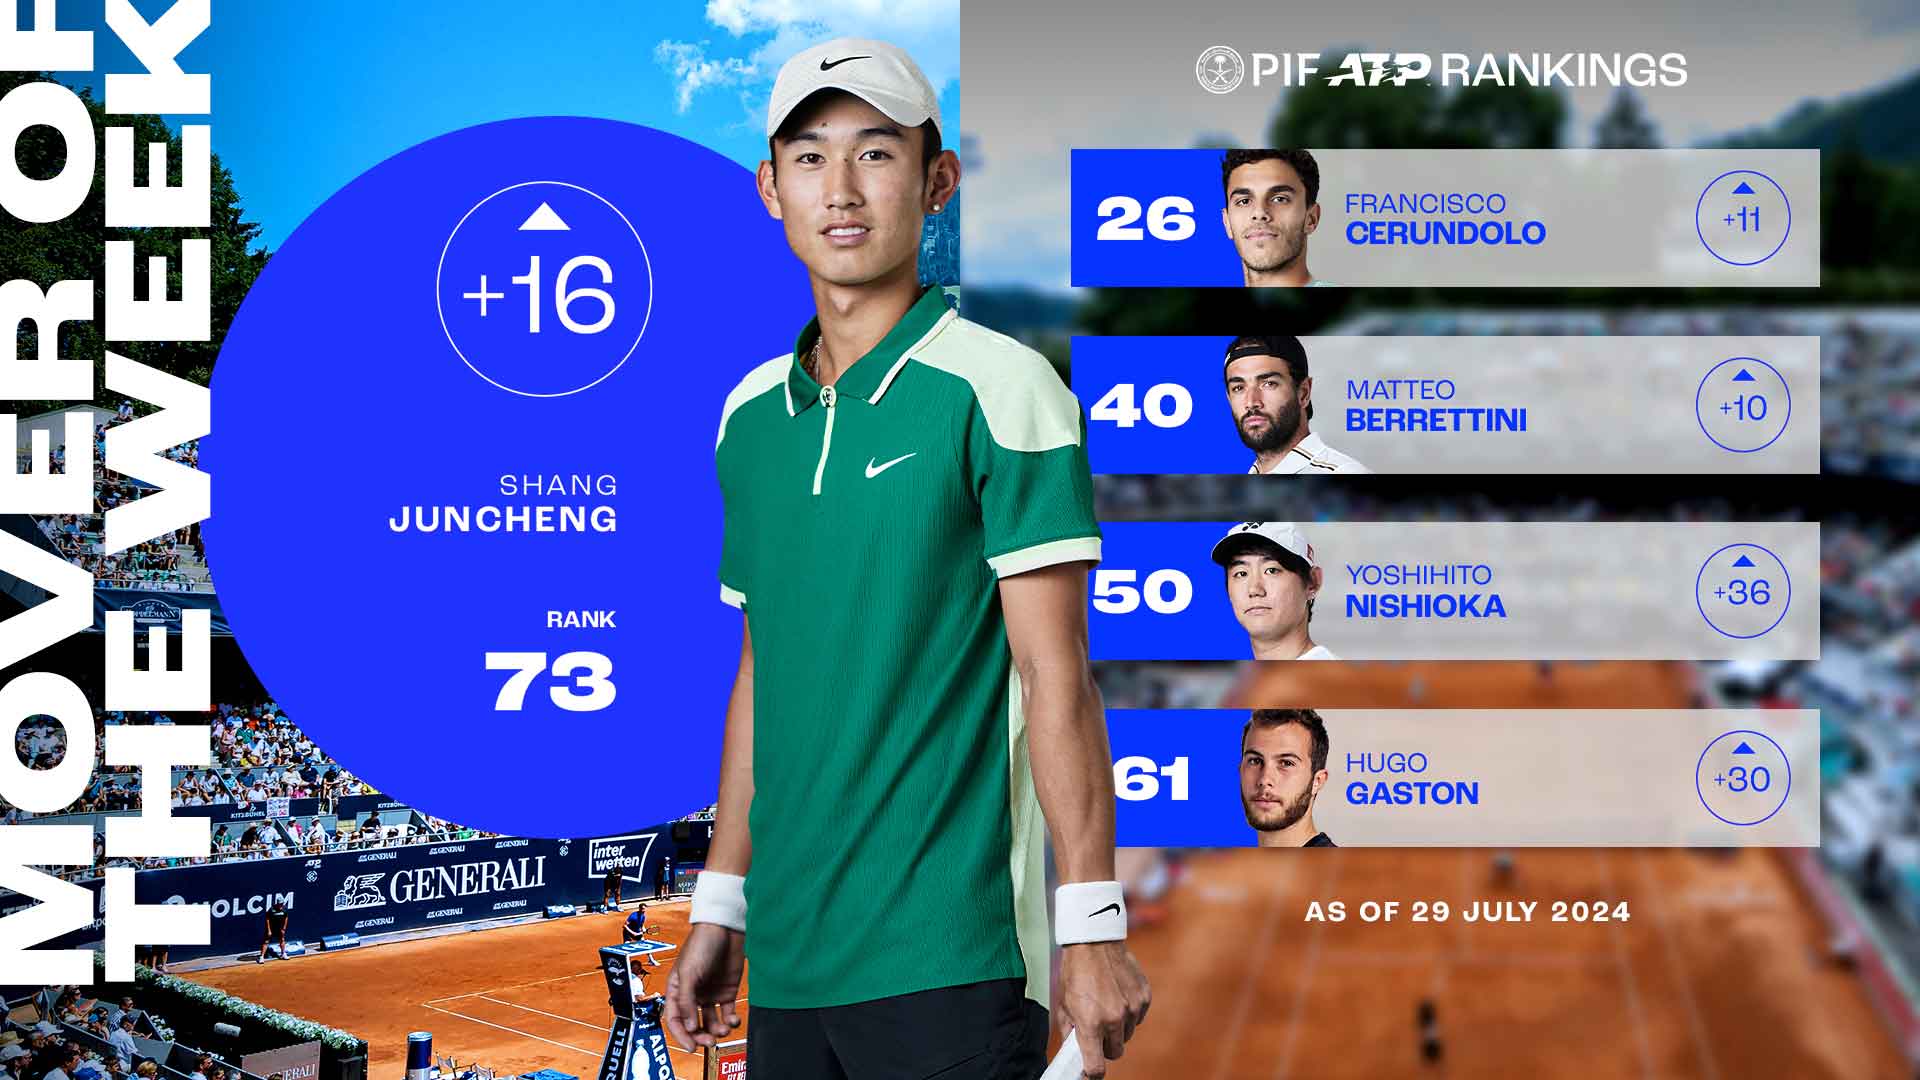 Shang Juncheng asciende 16 posiciones hasta la más alta de su carrera en el PIF ATP Rankings.